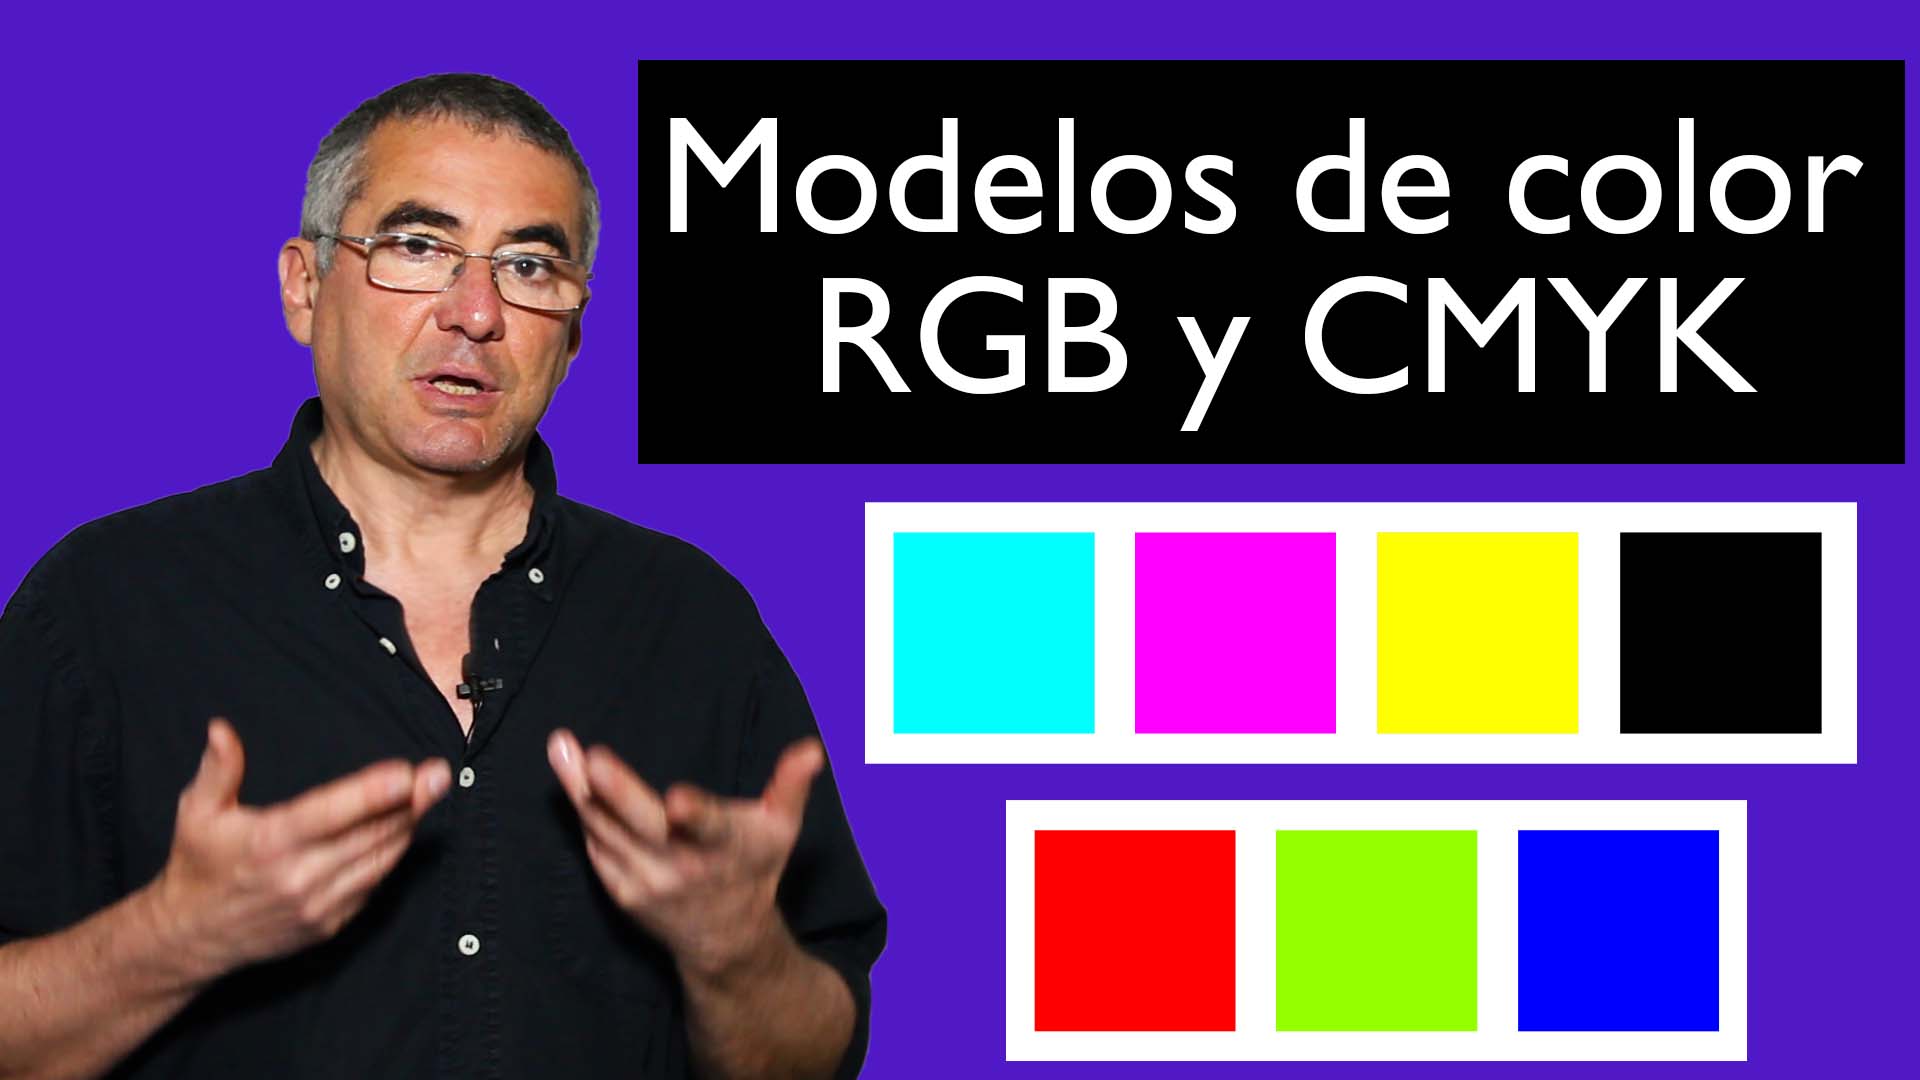 ¿Qué es modelo de color RGB y CMYK?